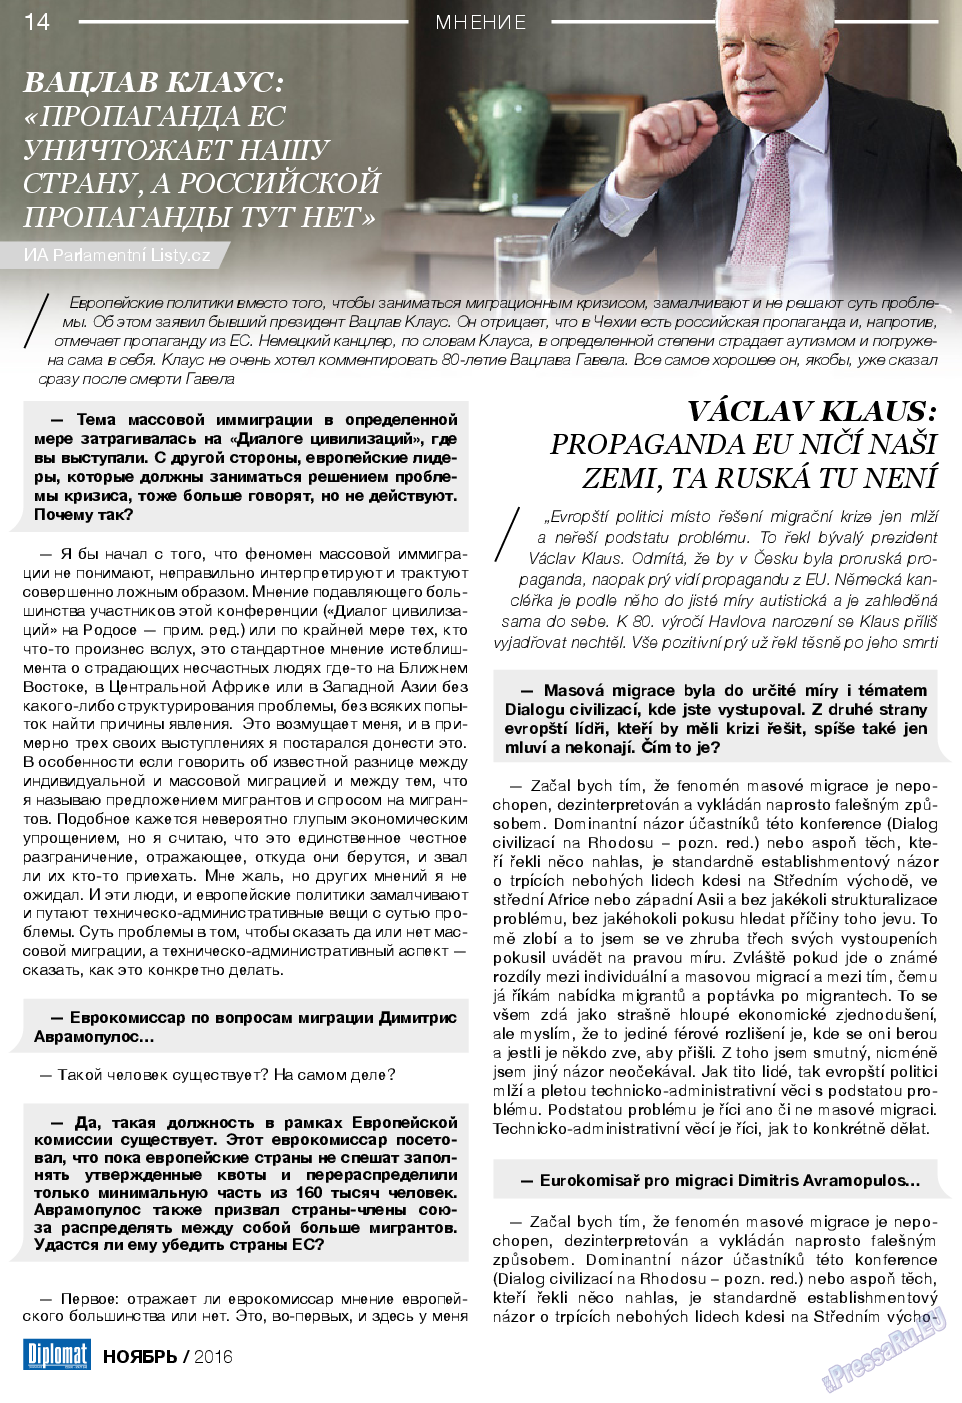 Diplomat (газета). 2016 год, номер 86, стр. 14